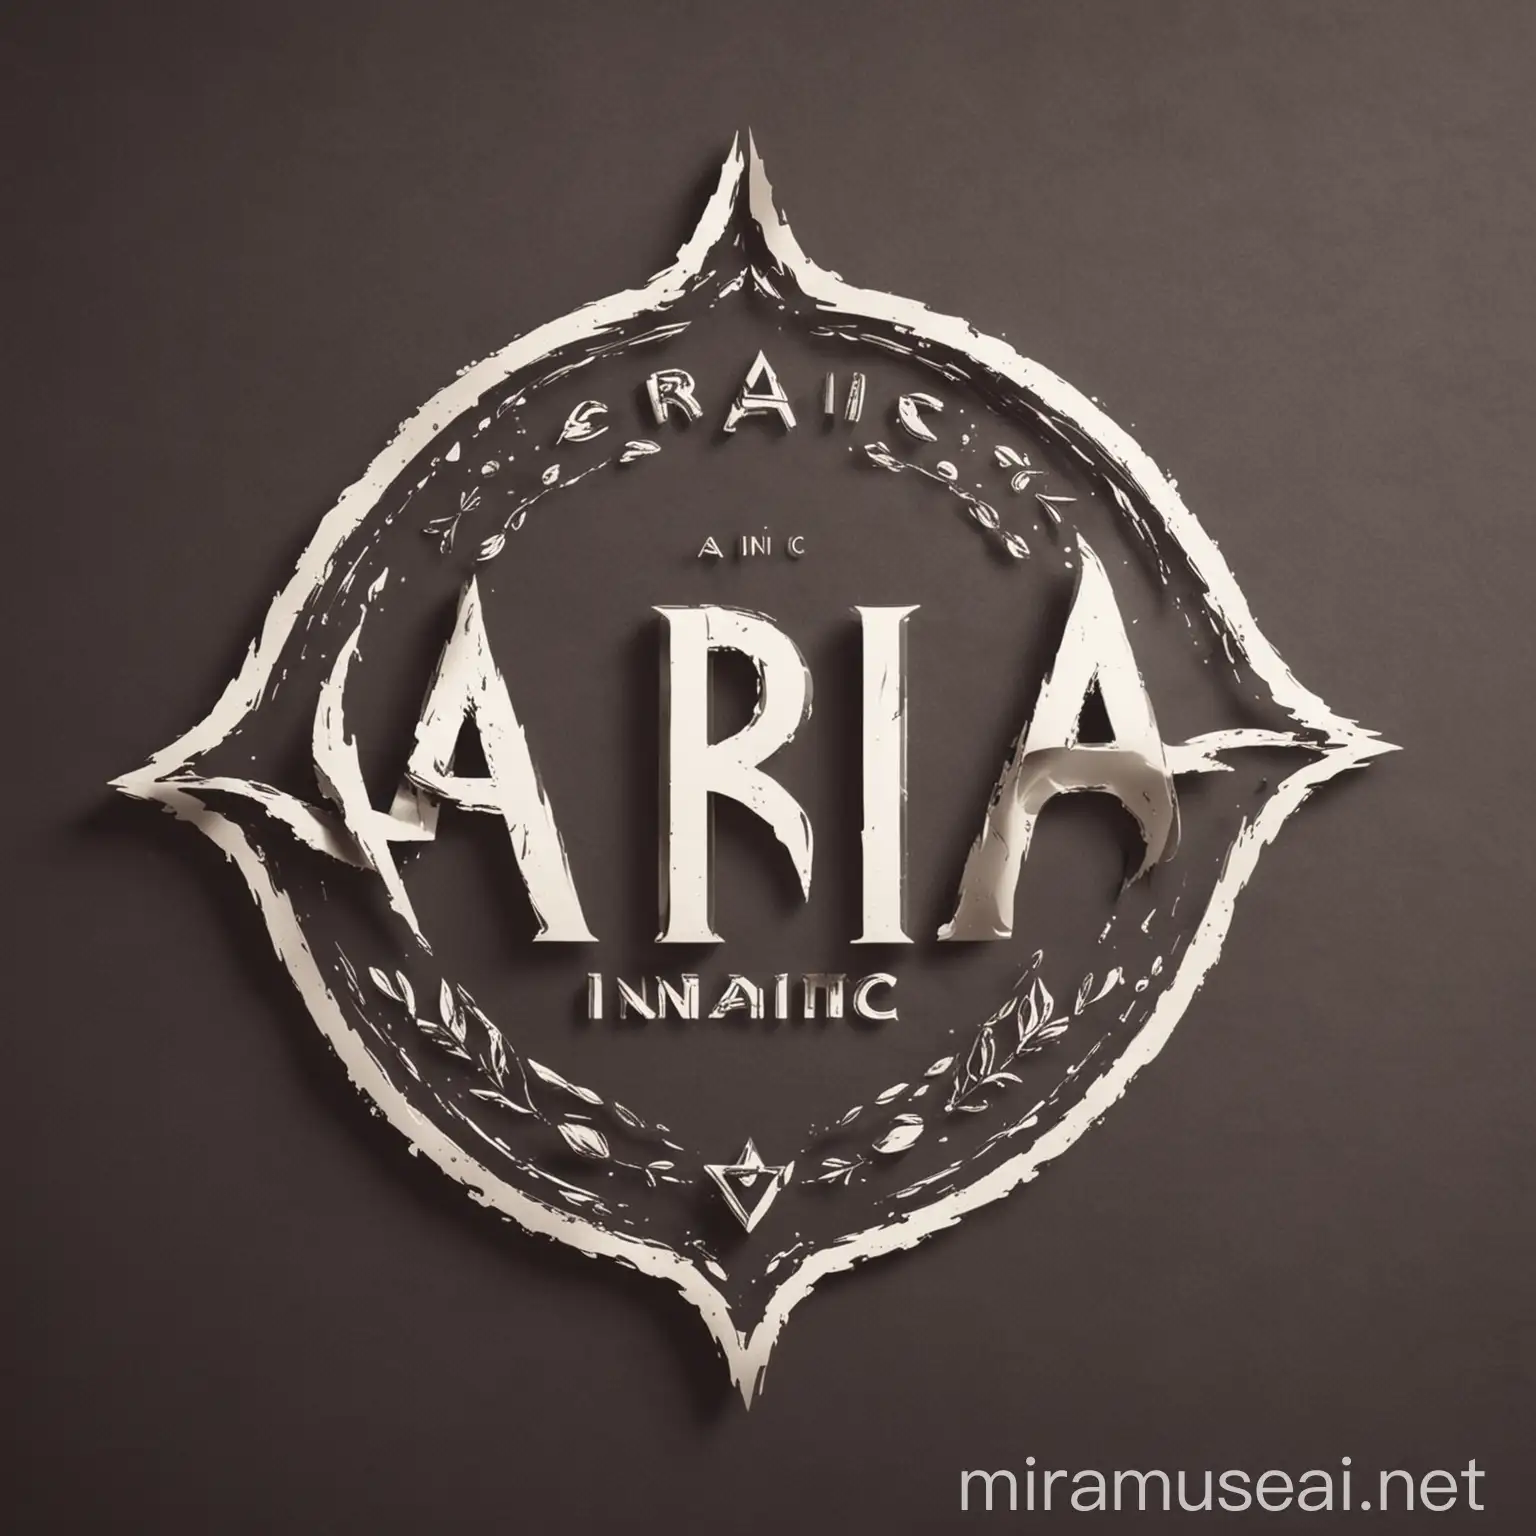 ARIA Inc Logo Design with Central Inscription